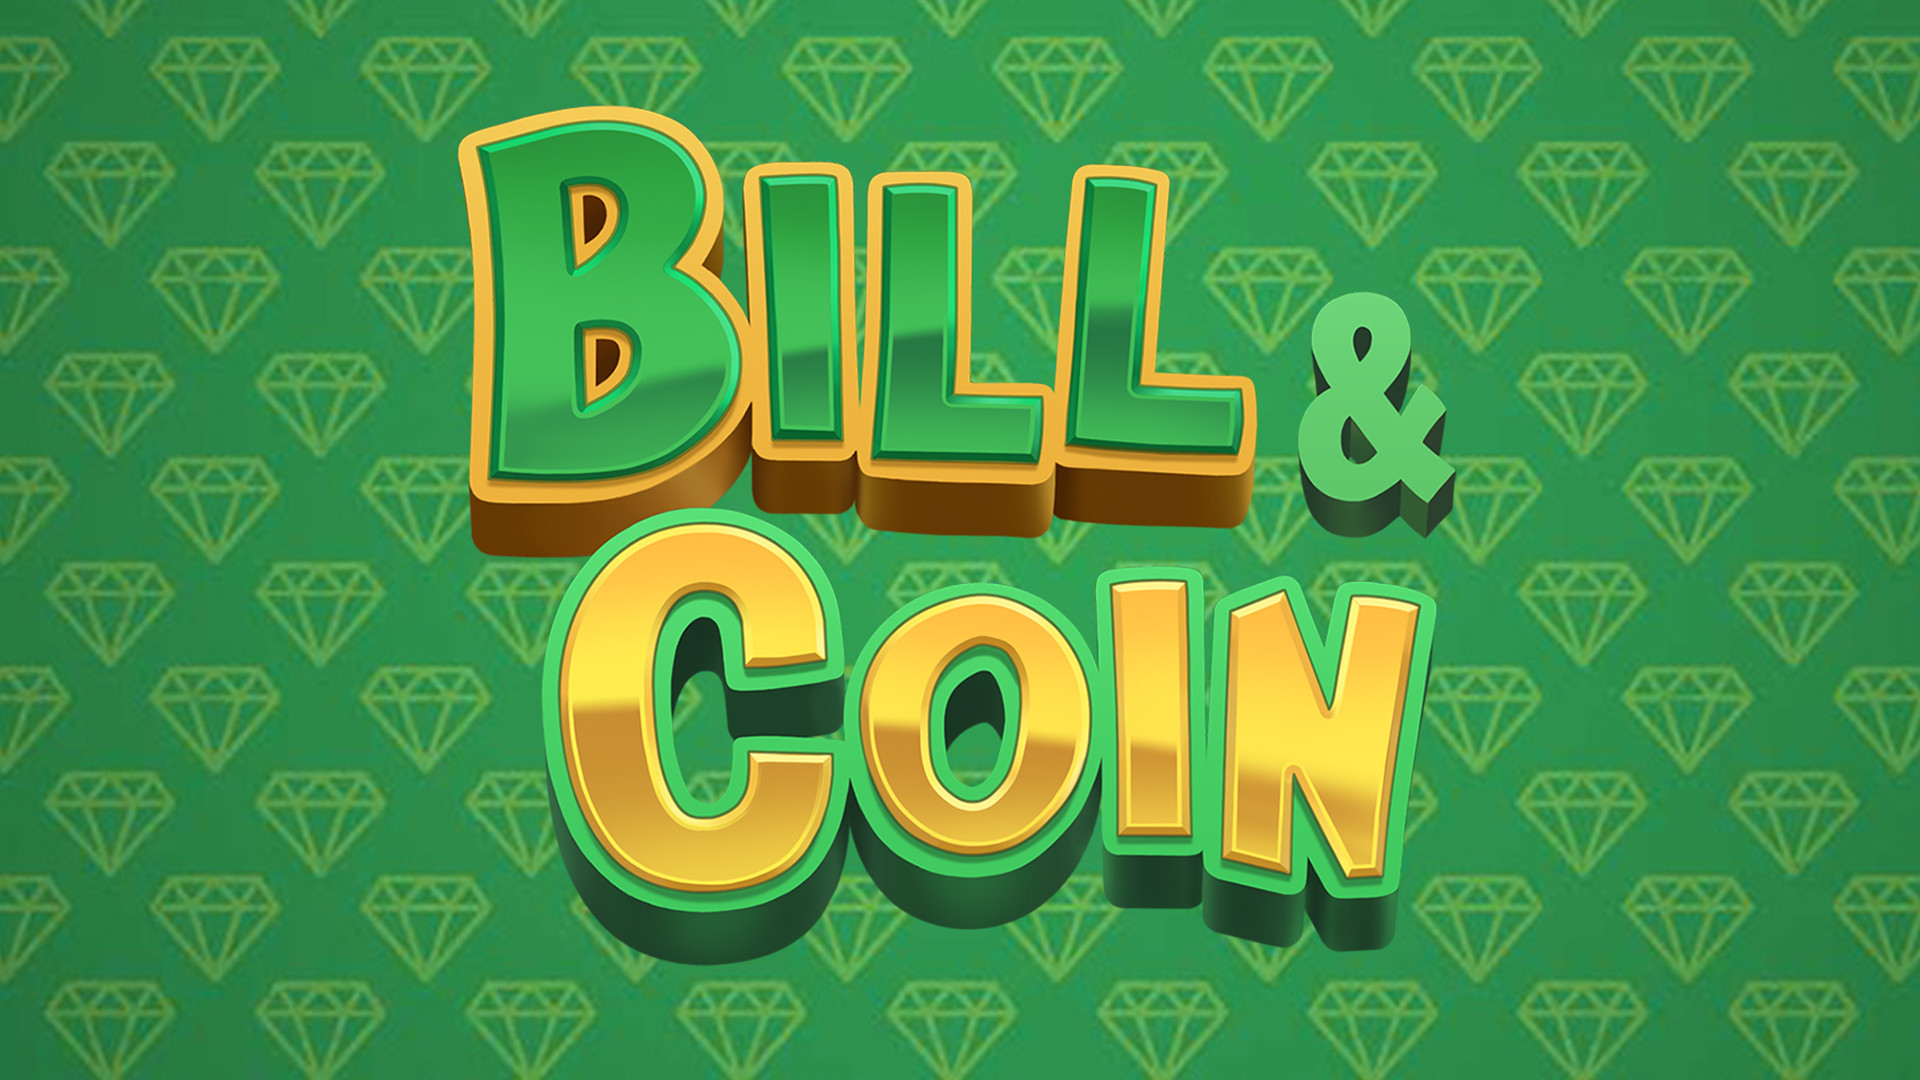 Bill & Coin